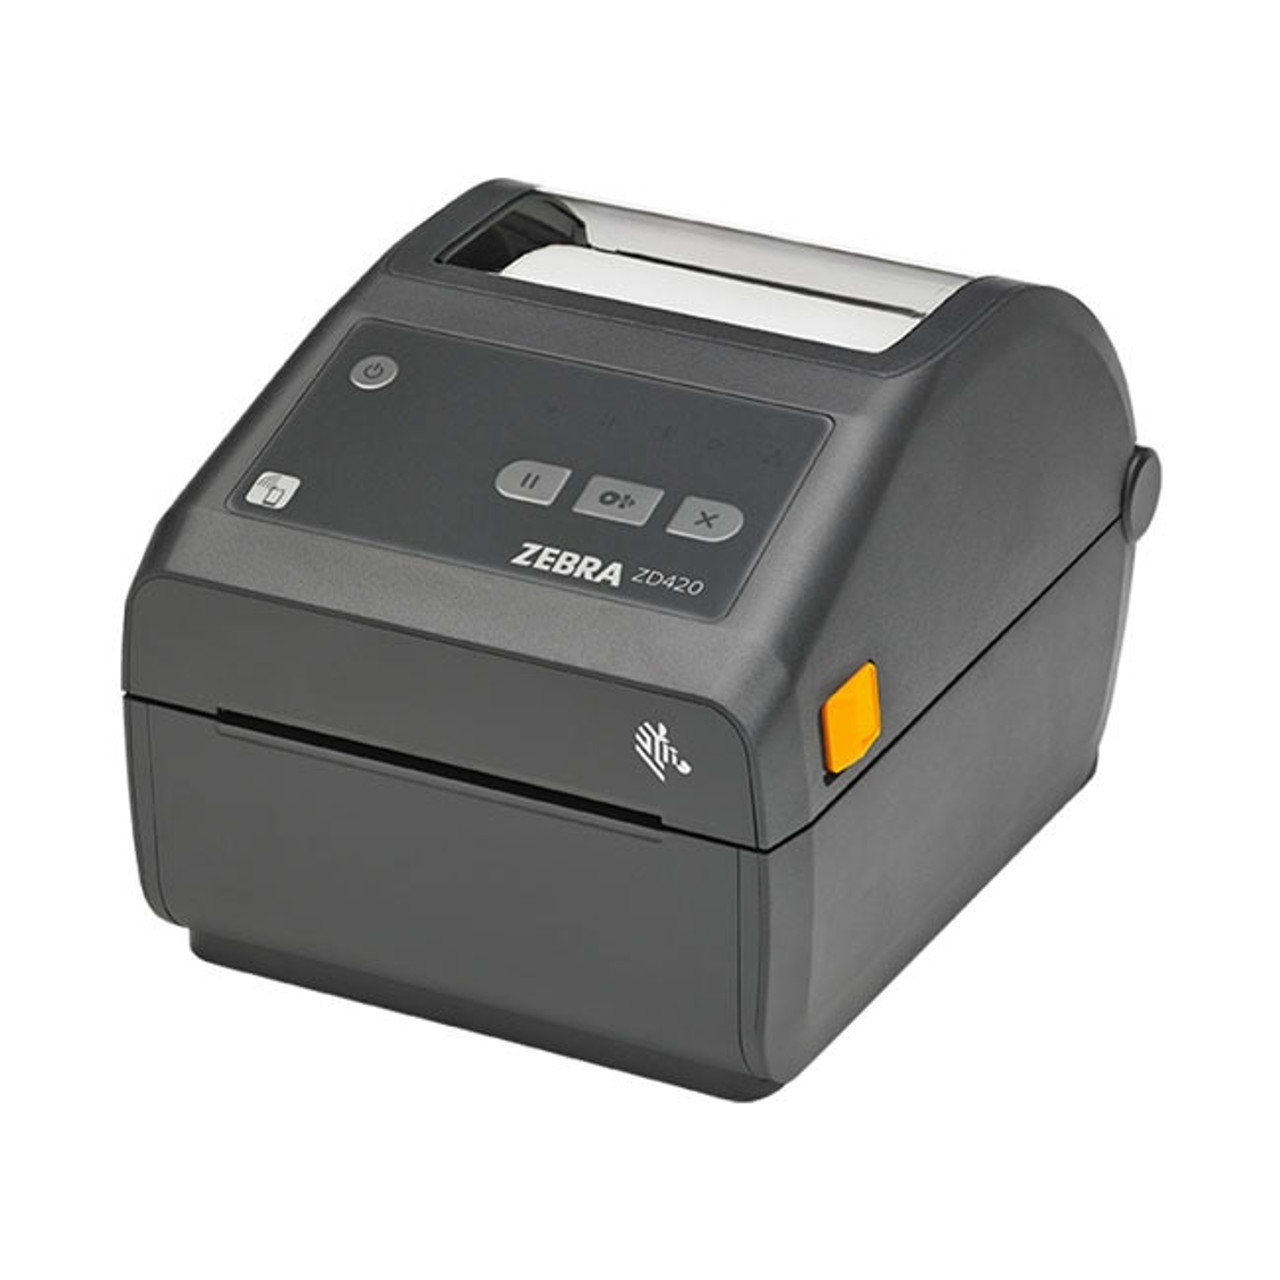 Zebra Zd420 Direct Thermal Desktop Printer Label Printers Australia 5309